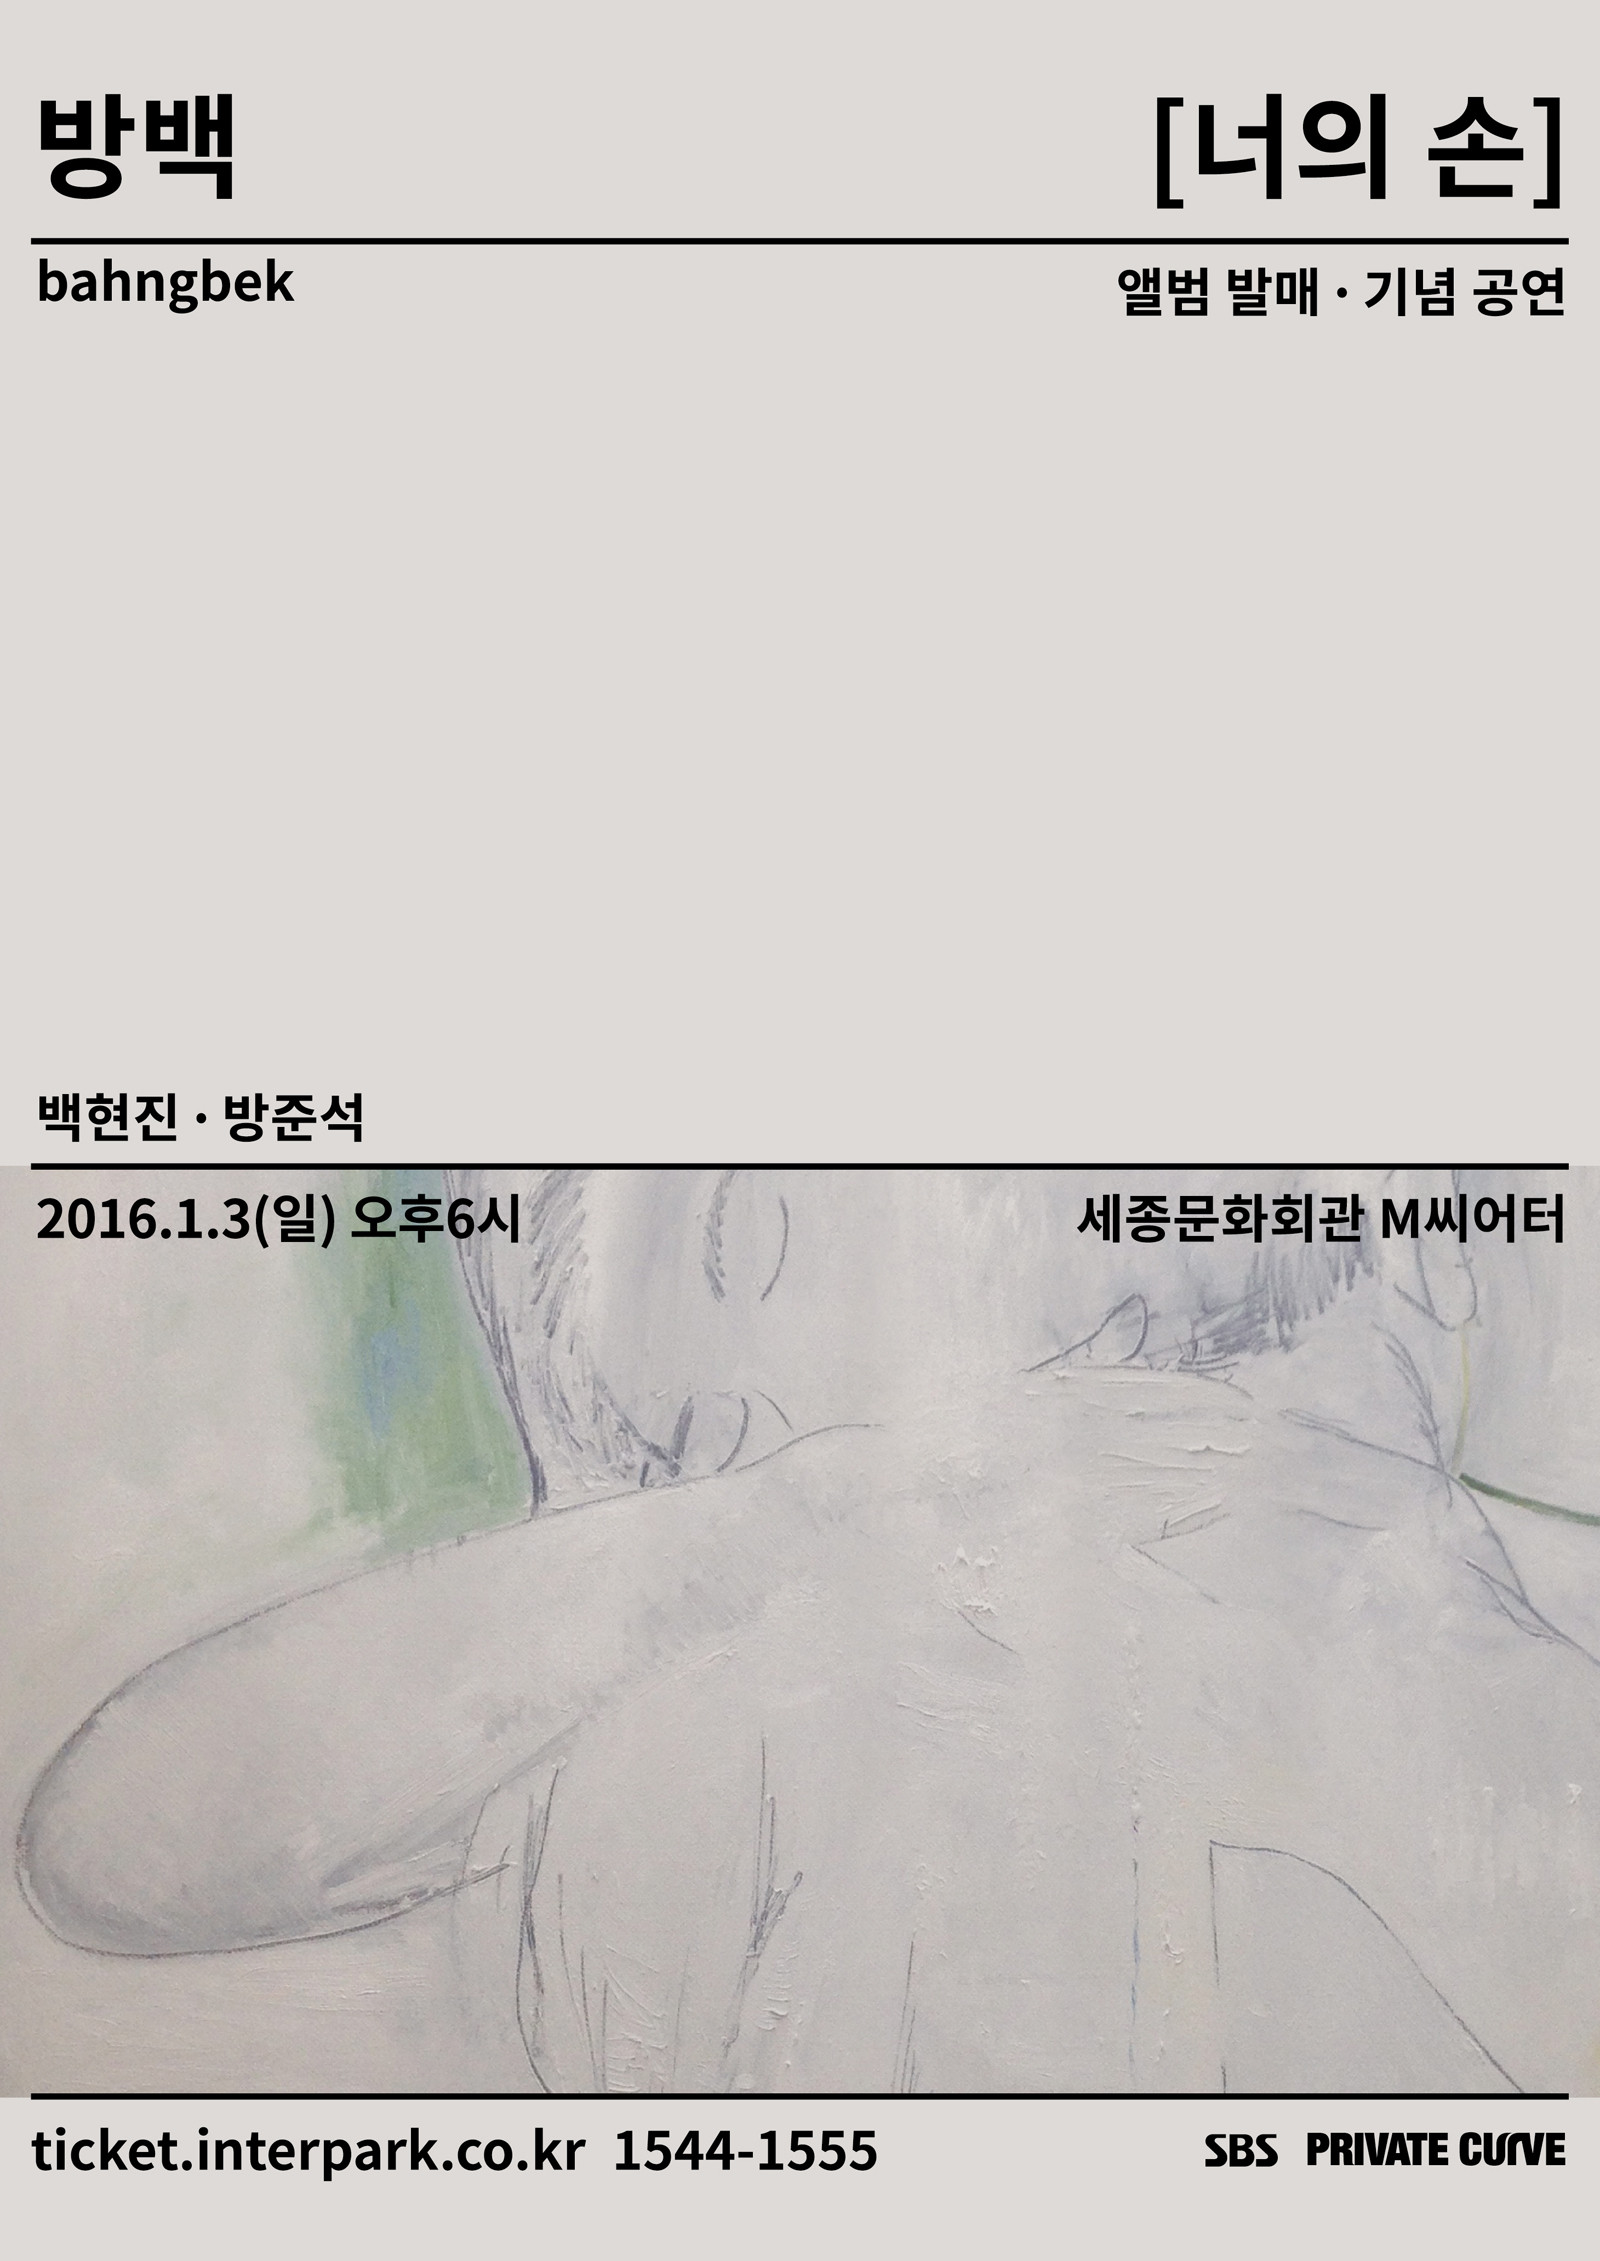 [공연안내] 방백(bahngbek) 앨범 발매 기념 공연 [너의 손]